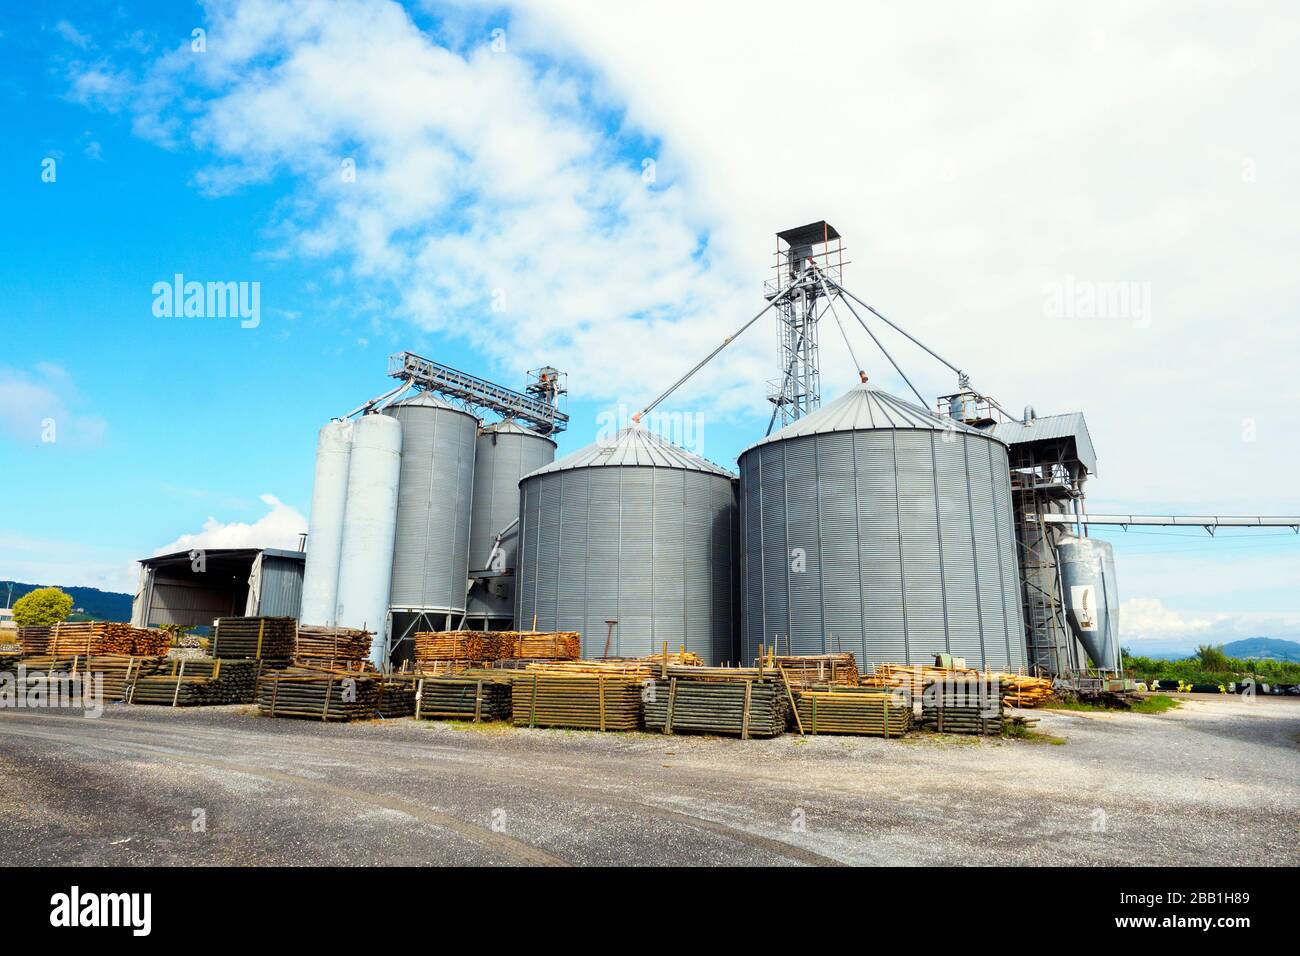 Wheat silos - Tuscany, Italy Stock Photo